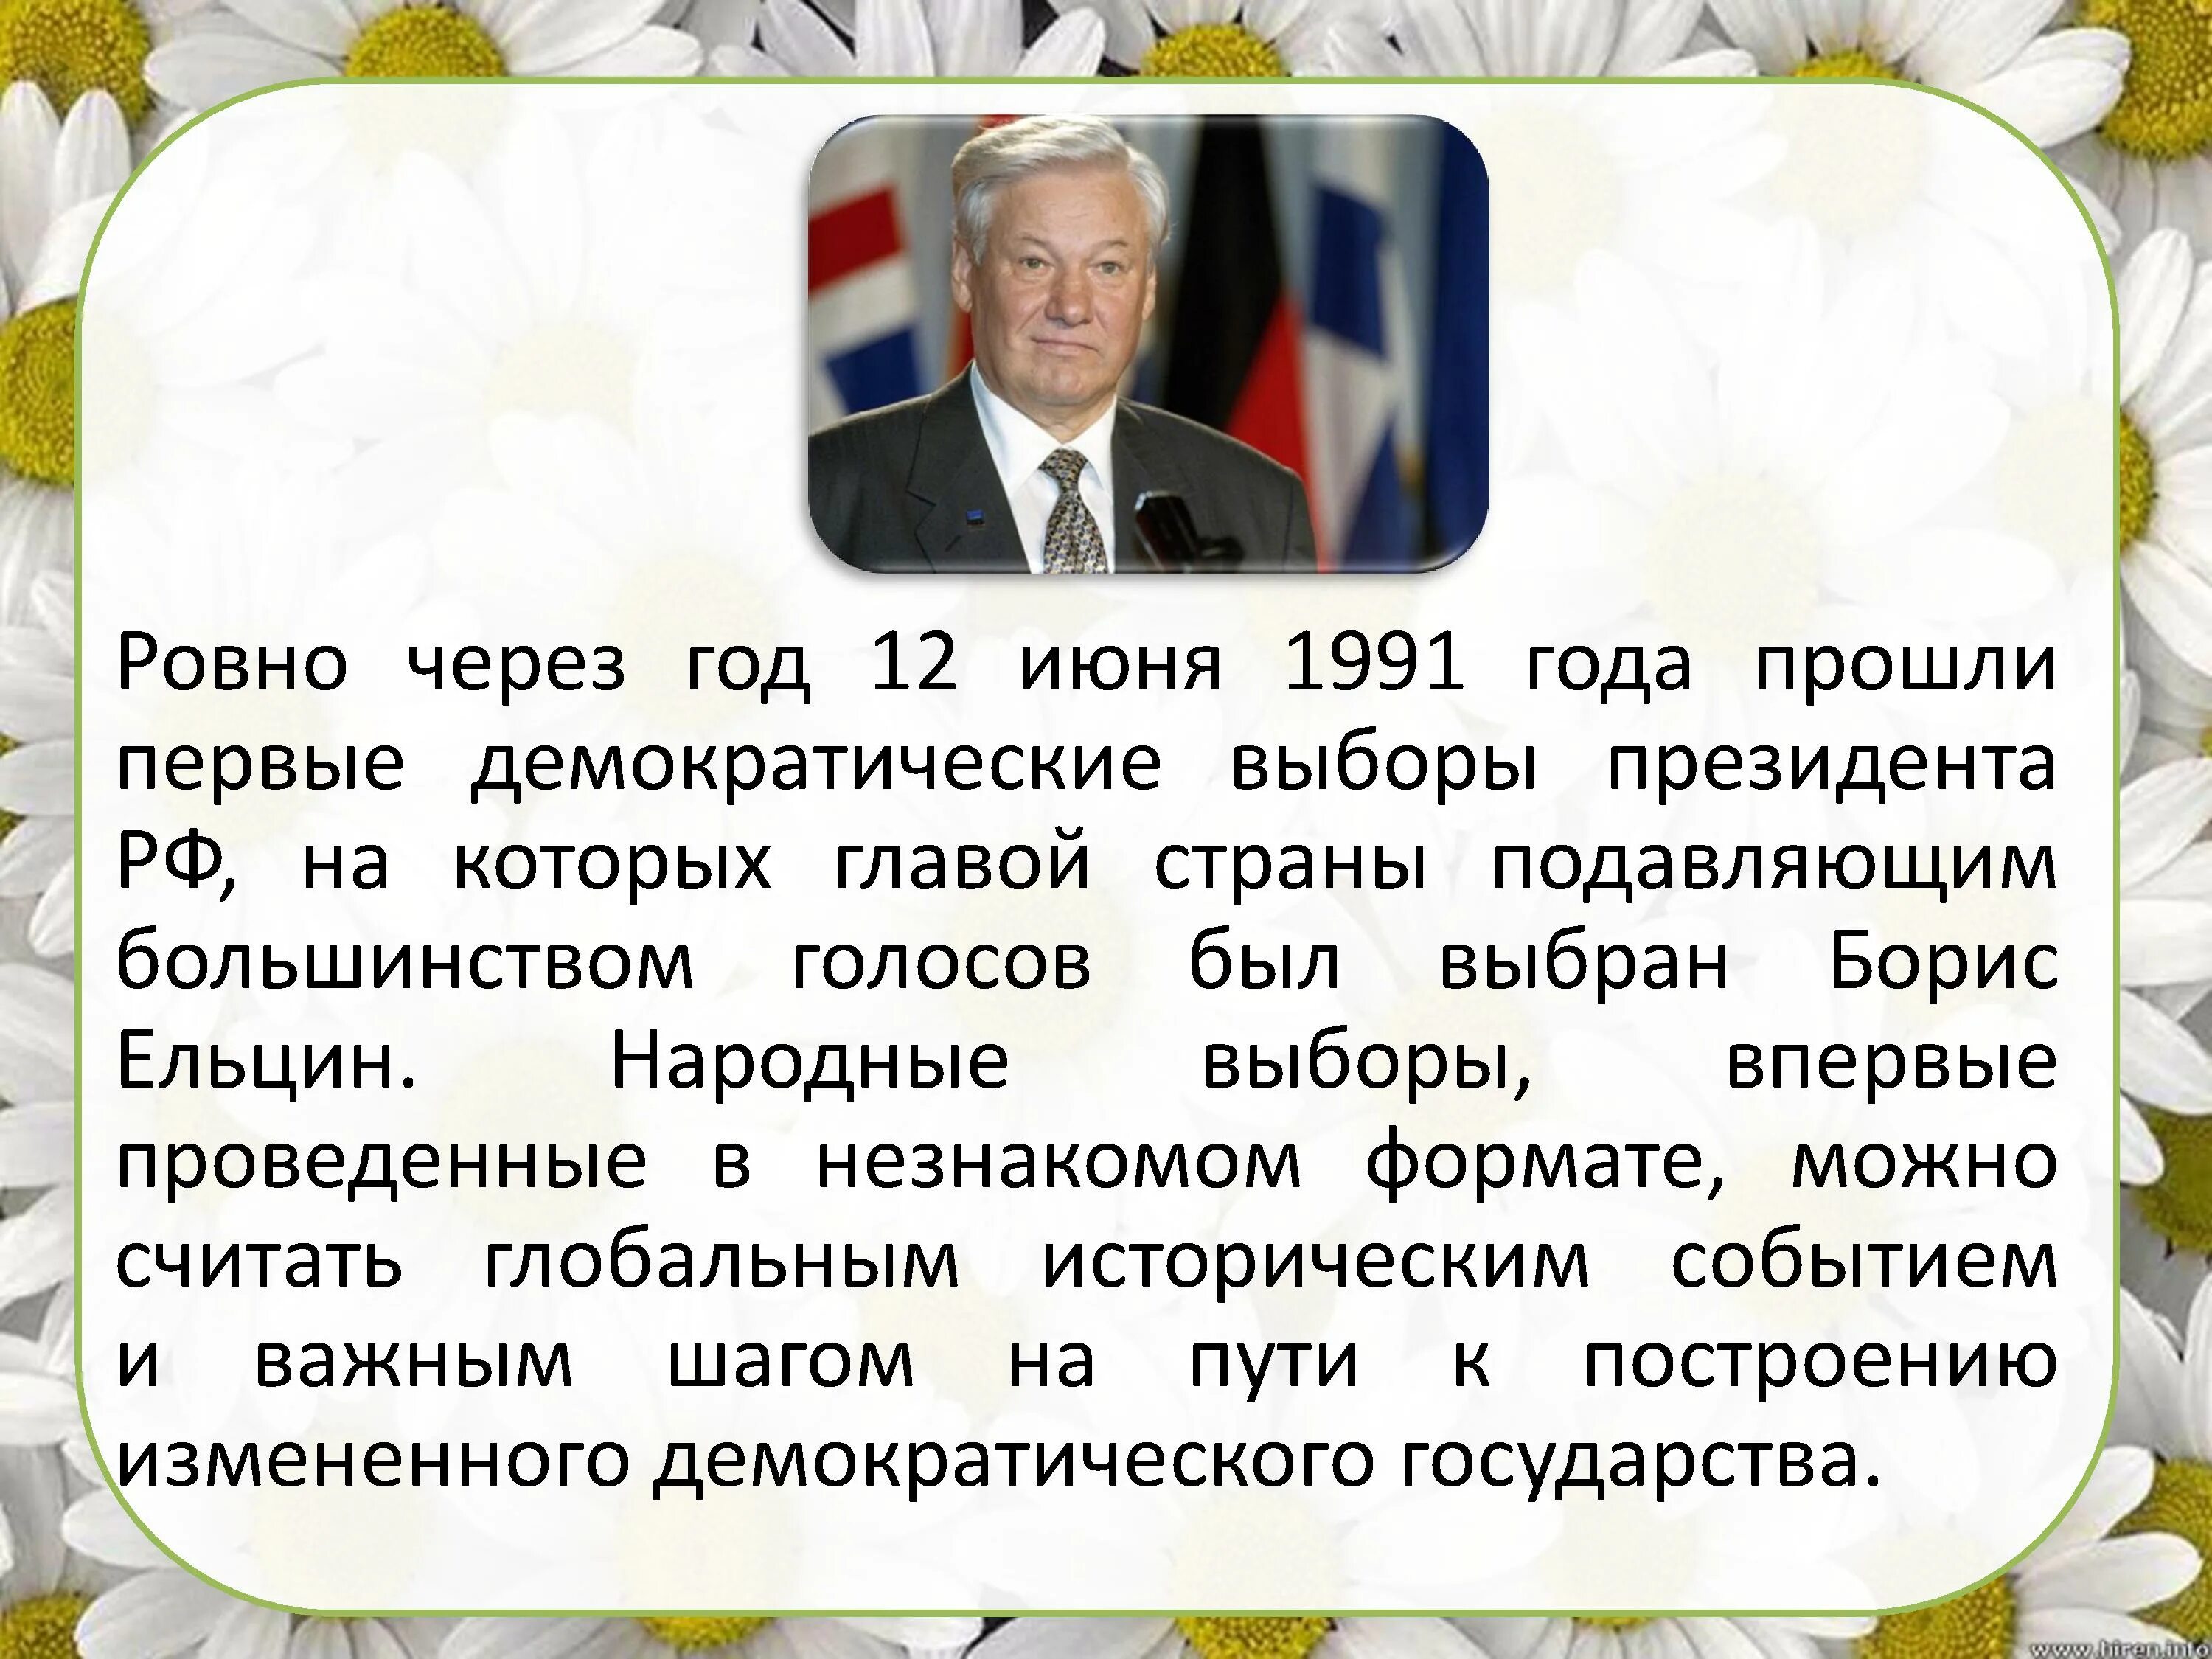 Выборы 12 июня 1991. 12 Июня 1991 года. 12 Июня 1991 года событие. Выборы 12 июня 1991 года. 12 Июня 1991 года выборы президента России.